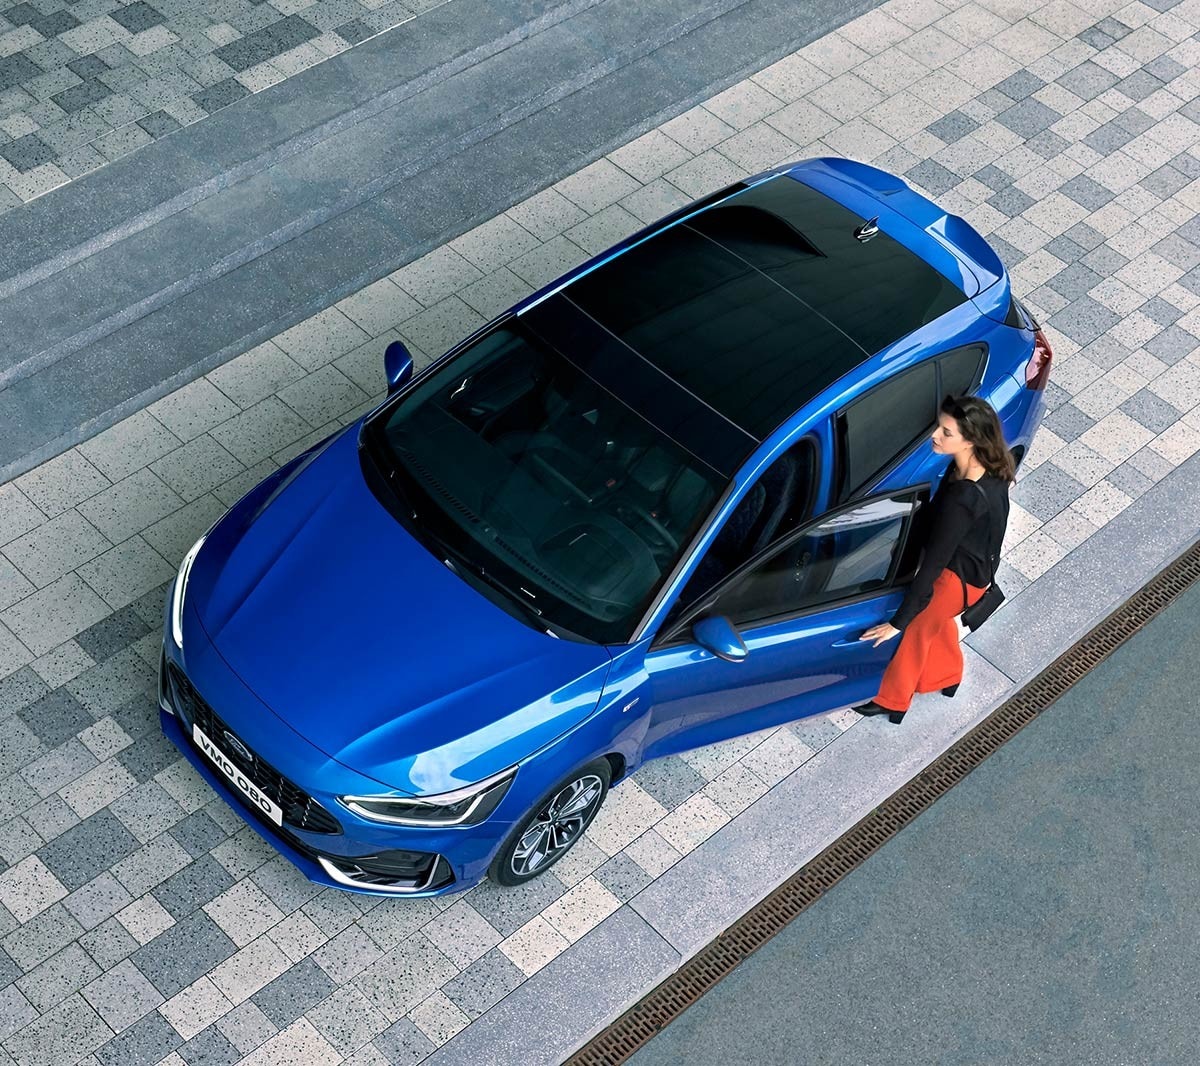 Ford Focus blu. Vista frontale a tre quarti dall’alto con visuale sul tetto panoramico apribile.